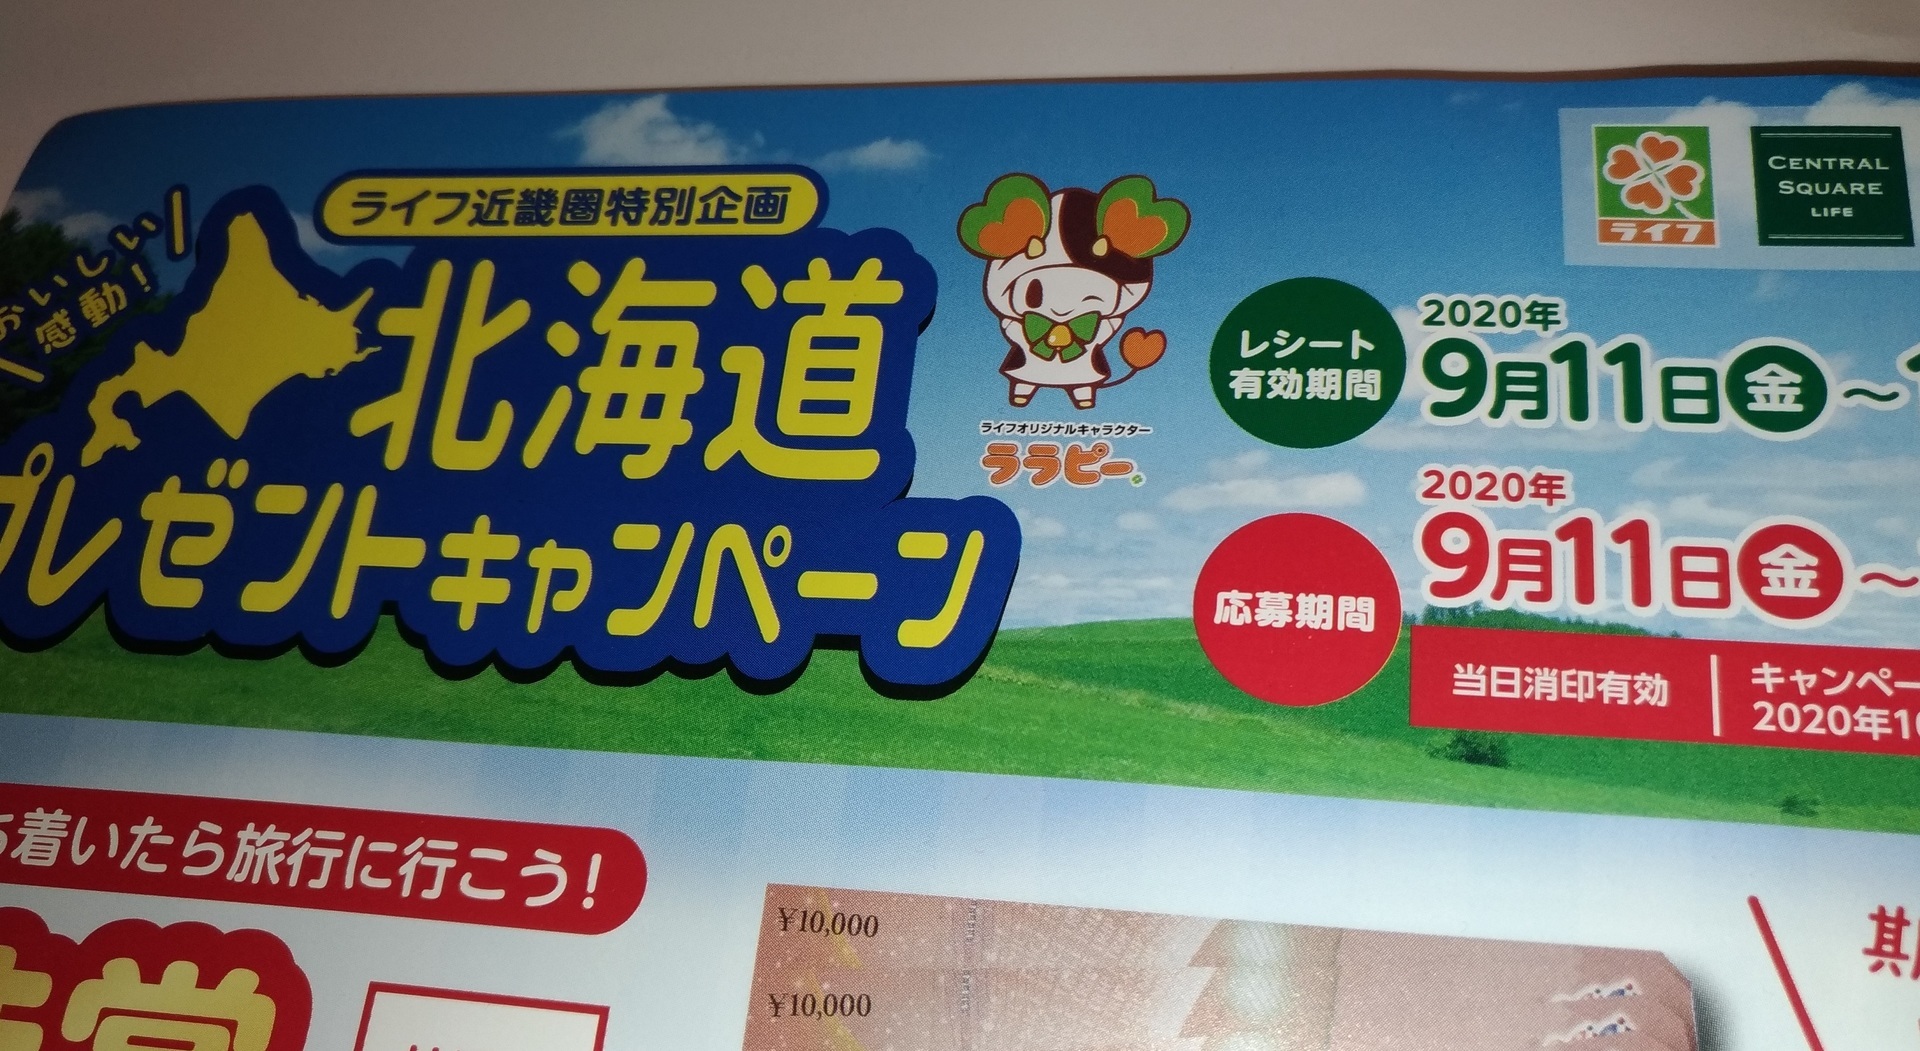 キャンペーン スーパーライフ 大阪おすすめお惣菜野菜をブログでポイントも